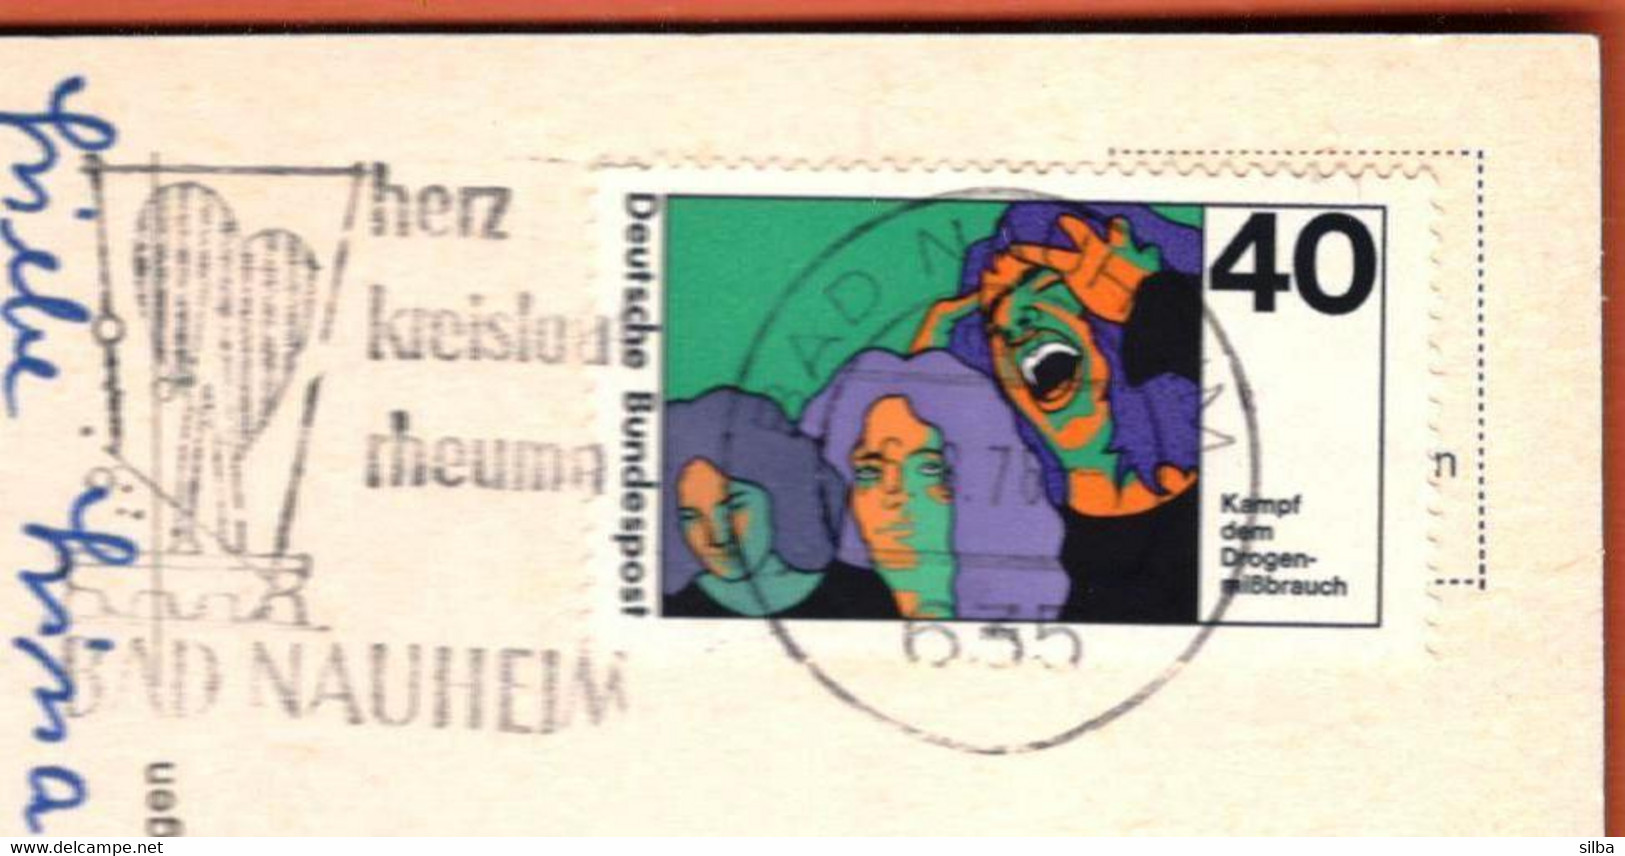 Germany Bad Nauheim 1976 / Herz, Kreislauf, Rheuma, Heart, Circulation, Rheumatism / Health / Machine Stamp ATM - Termalismo